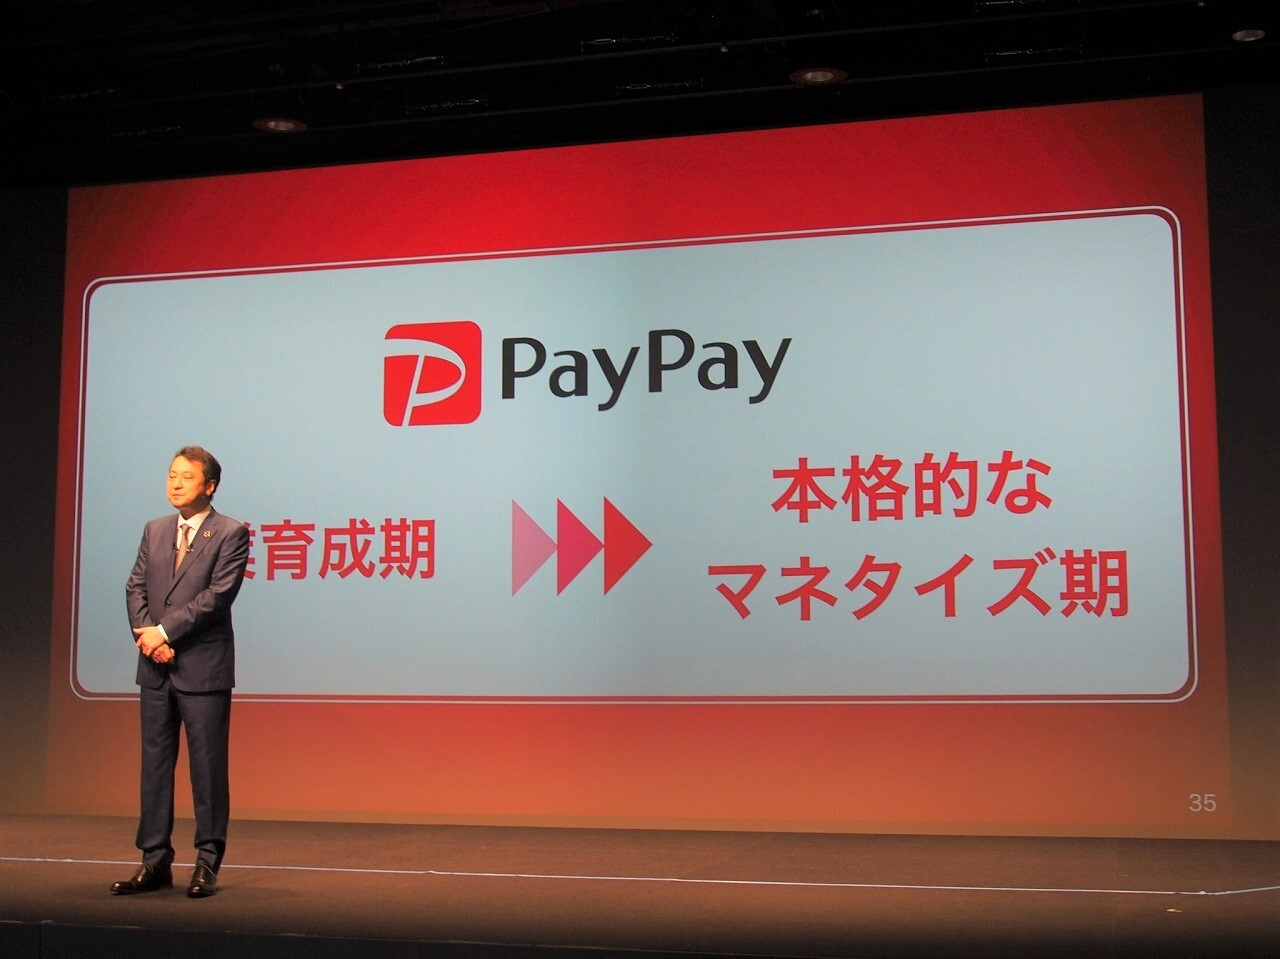 PayPayはサービス開始から3年9カ月が経過したことから、事業の育成からマネタイズへとフェーズを移していく考えを示している